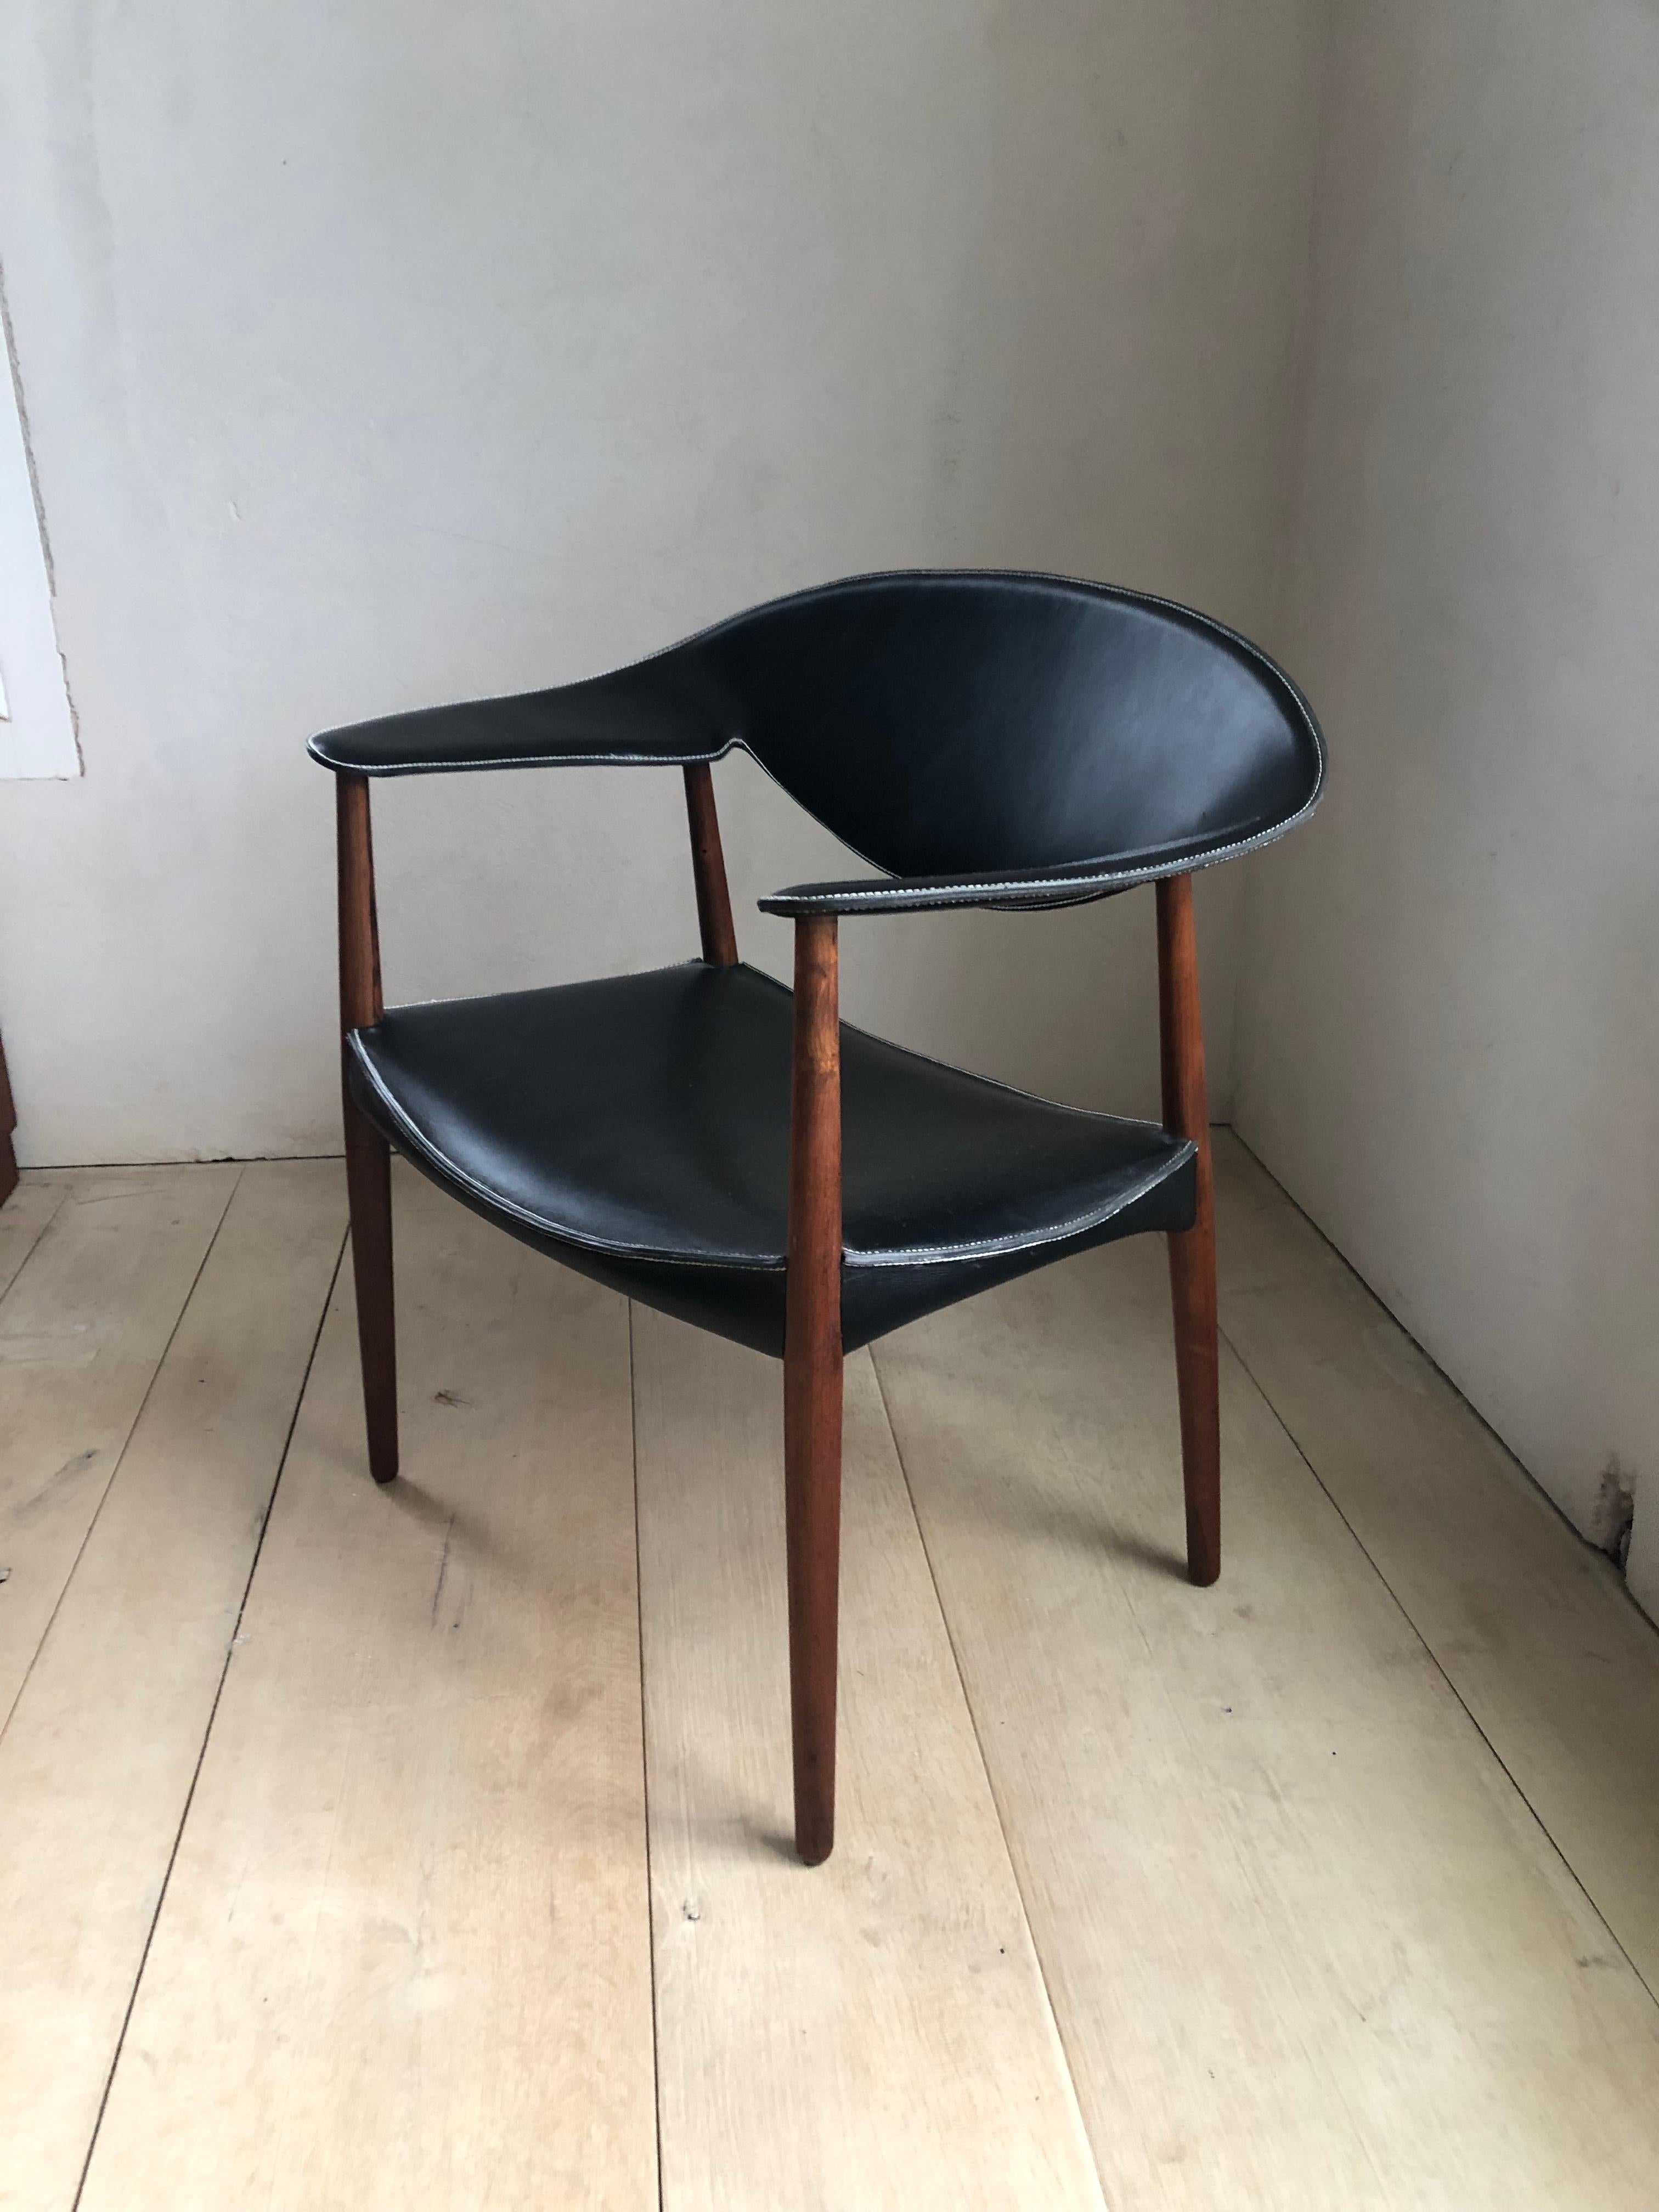 Ejner Larsen et Aksel Bender Madsen
Rare fauteuil 'Metropolitan', modèle n° 2842/L
Design/One 1949, exécuté vers 1961
Bois de rose, cuir

Exécuté par le maître ébéniste Willy Beck, Copenhague, Danemark. Le dessous porte une étiquette métallique